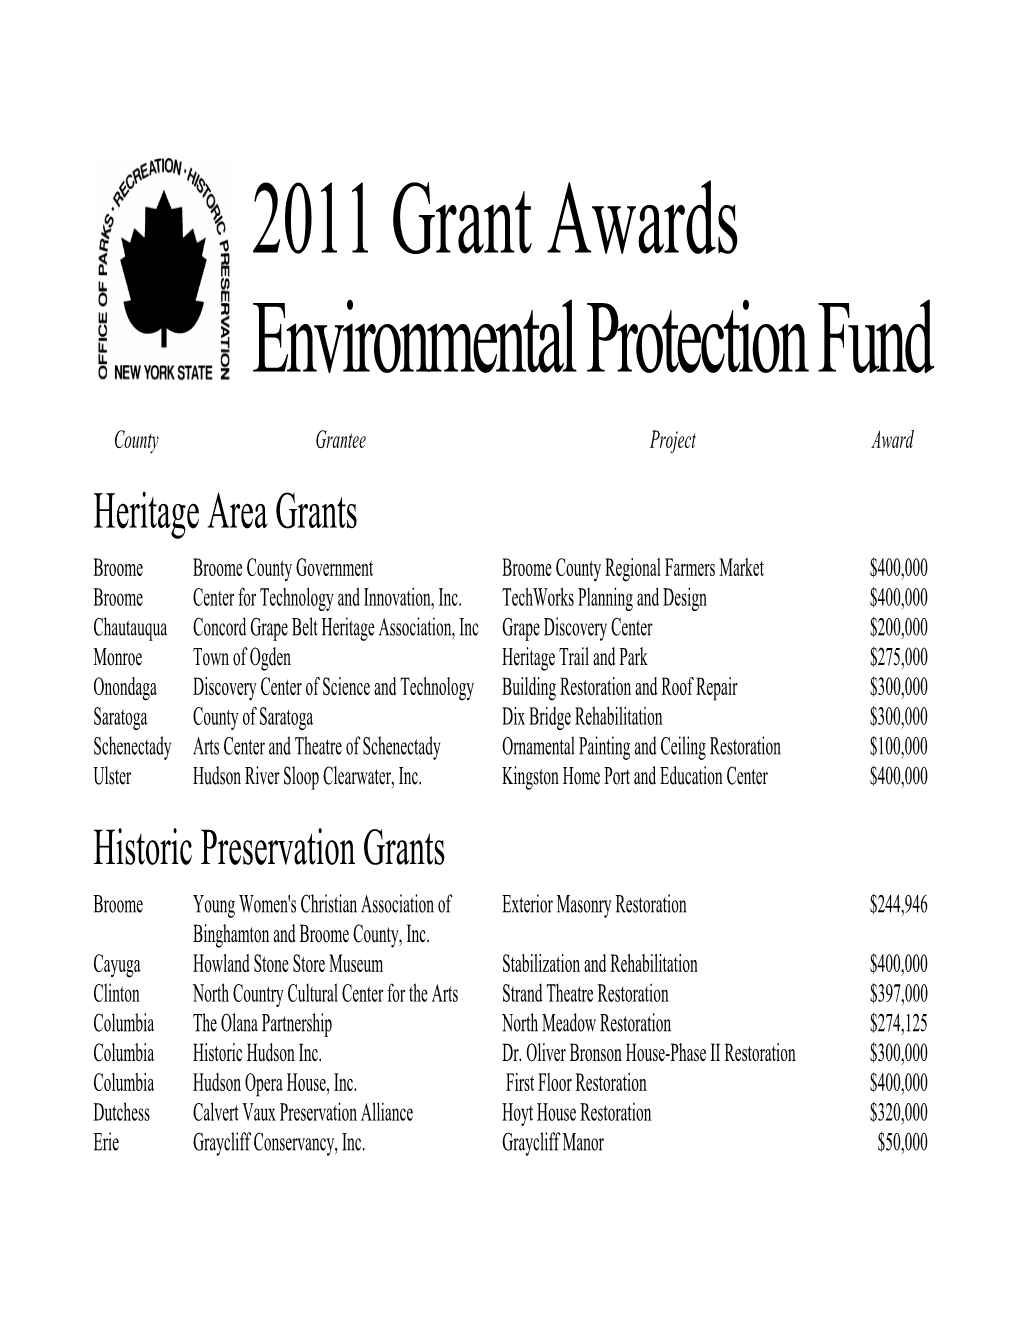 2011 EPF Grant Awards